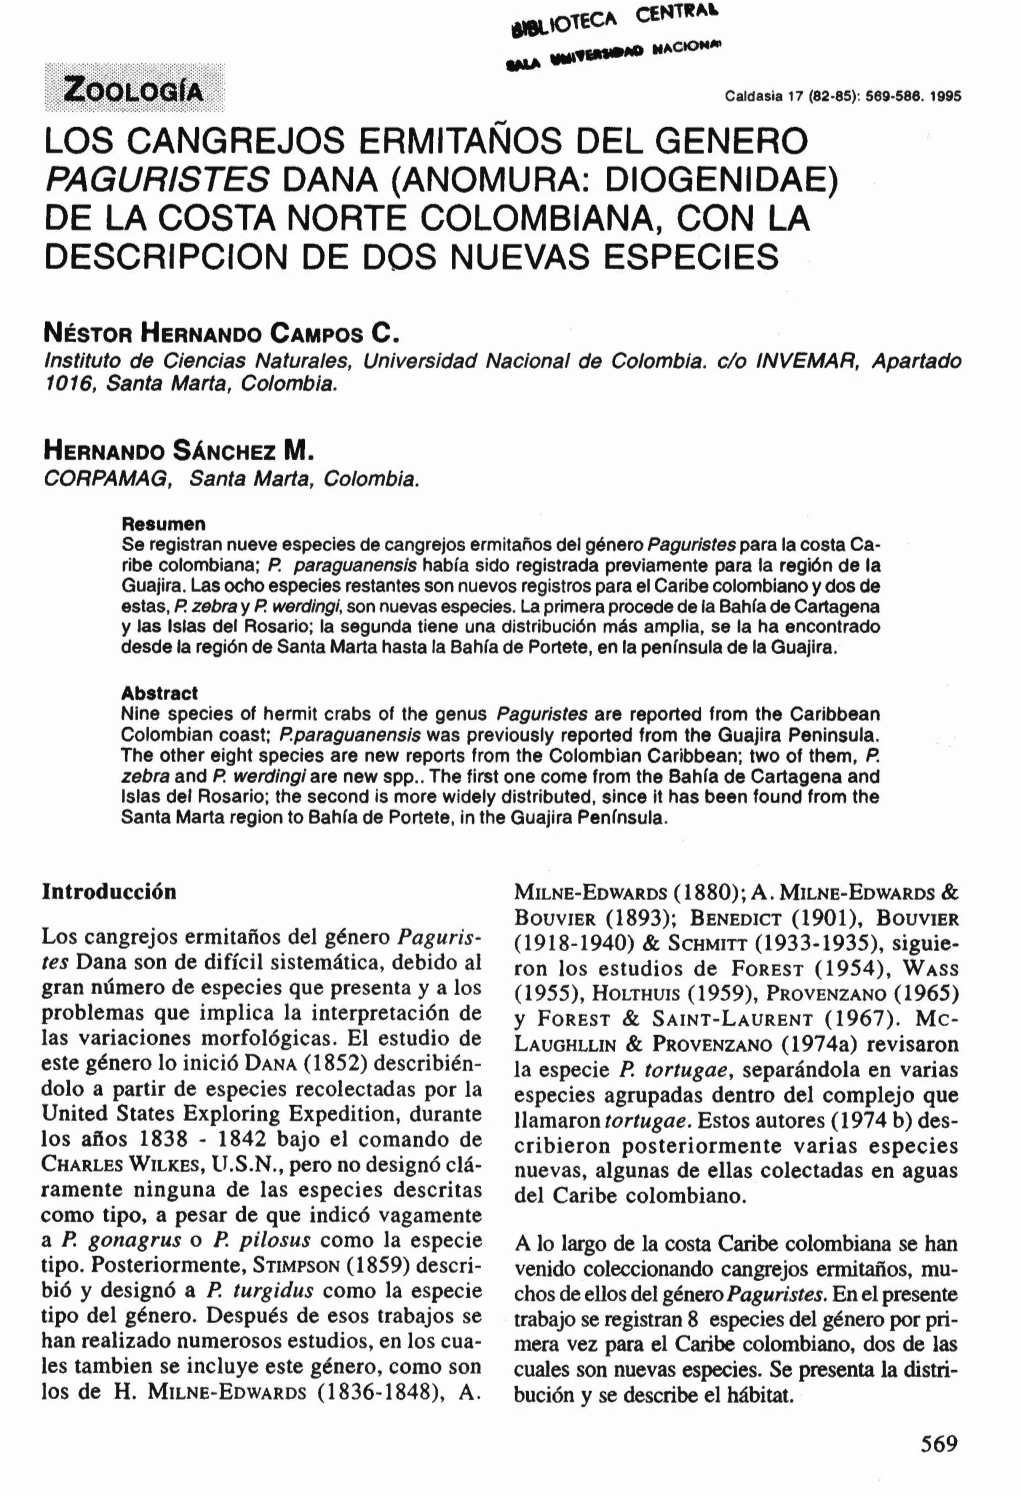 Los Cangrejos Ermitaños Del Genero Paguristes Dana (Anomura: Diogenidae) De La Costa Norte Colombiana, Con La Descripcion De Dos Nuevas Especies